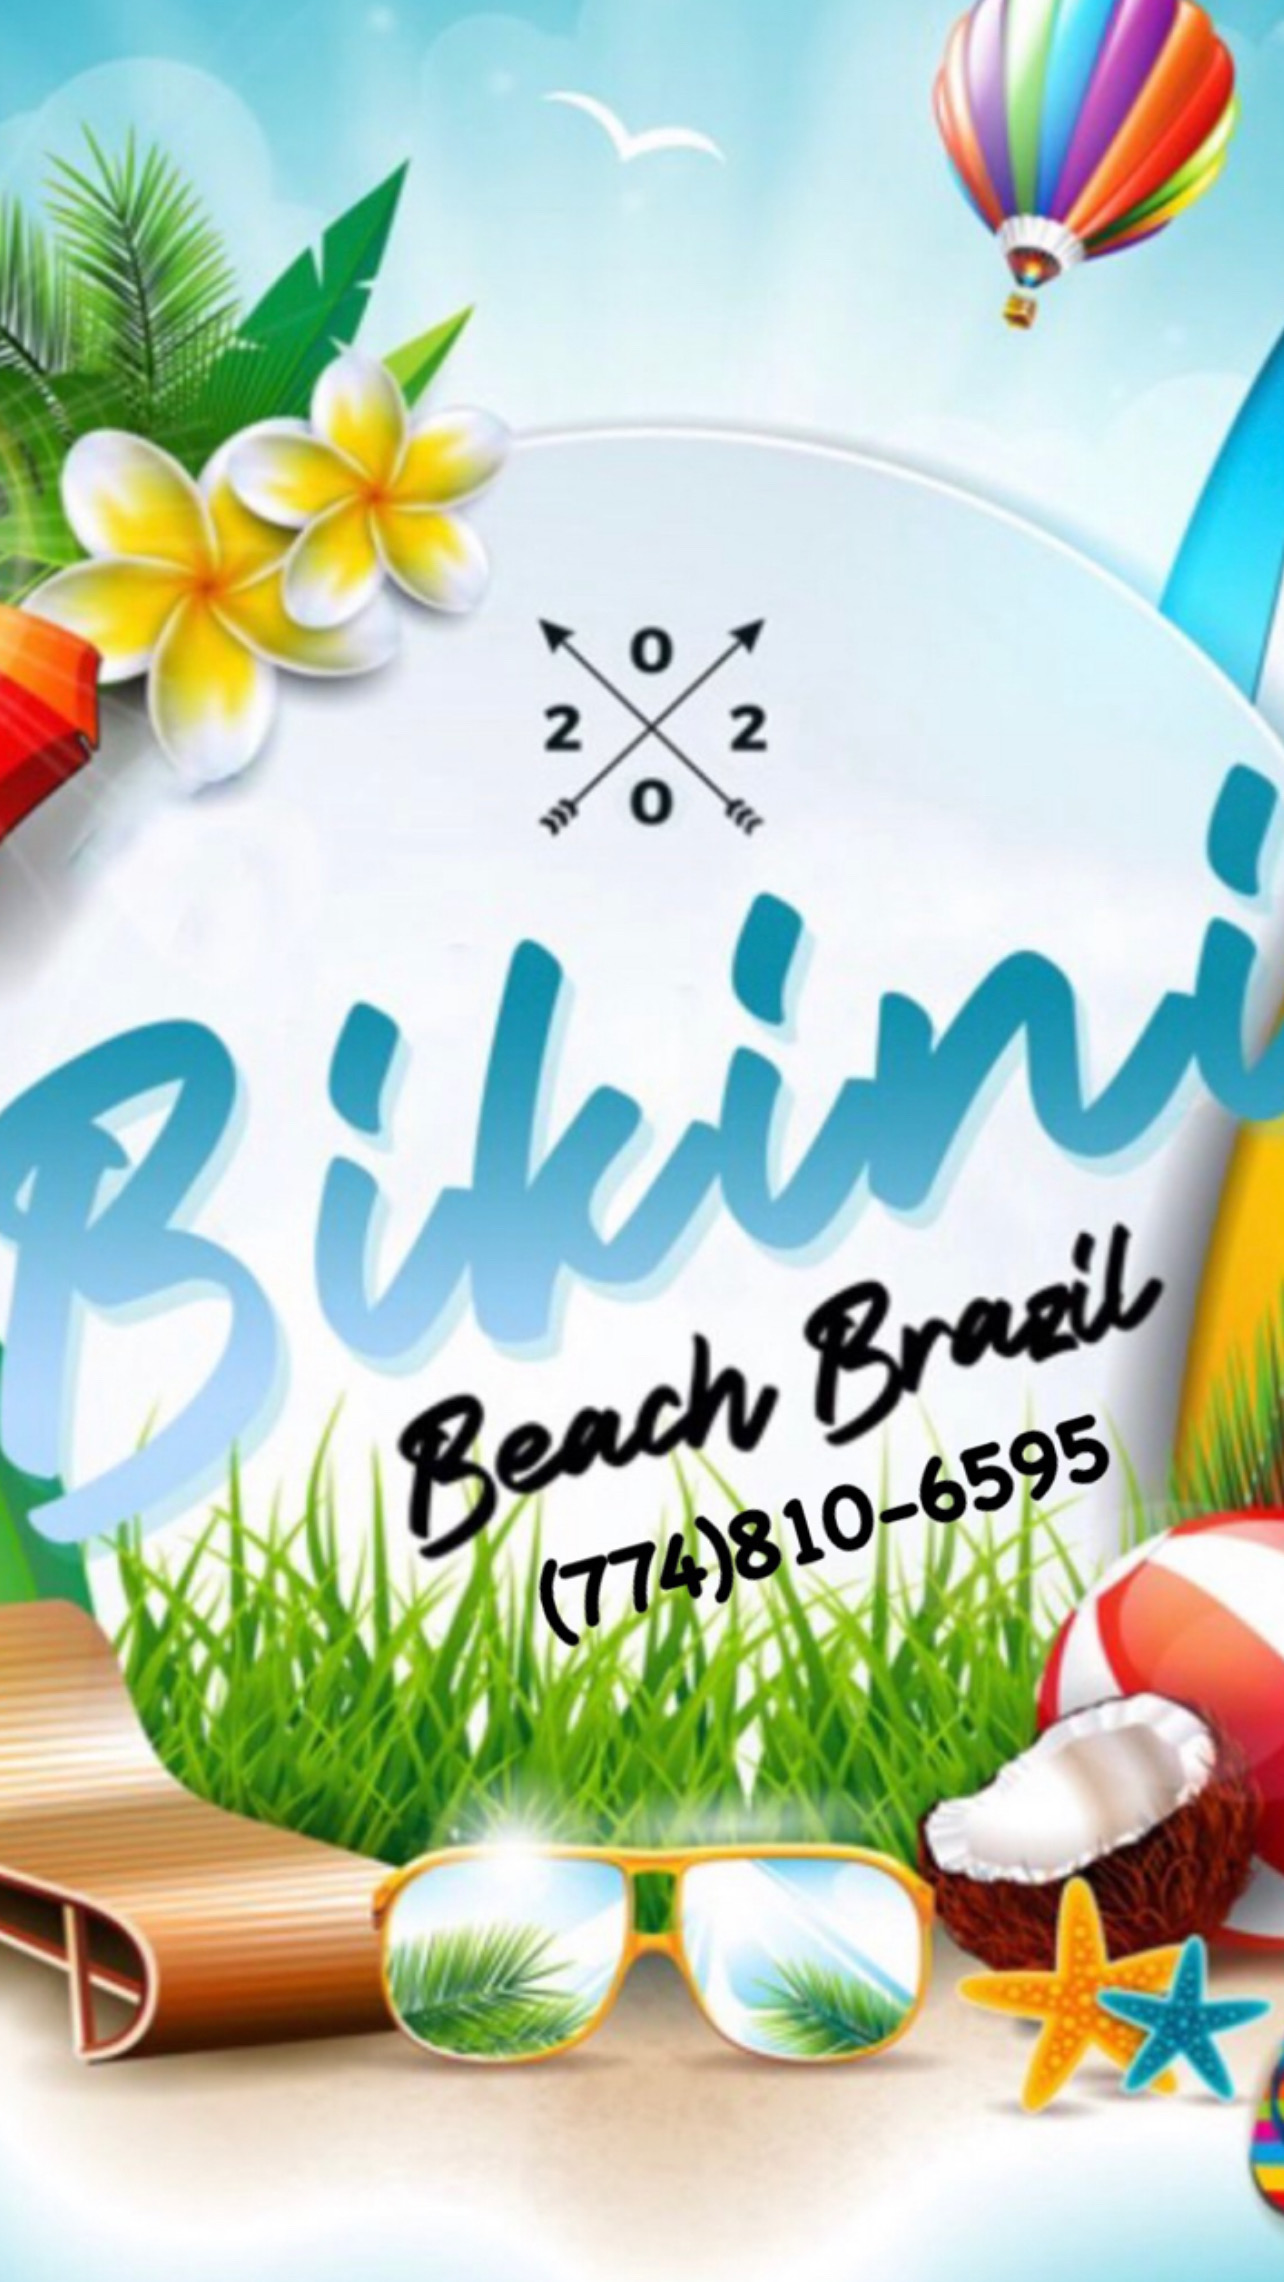 Bikini Beach Brazil